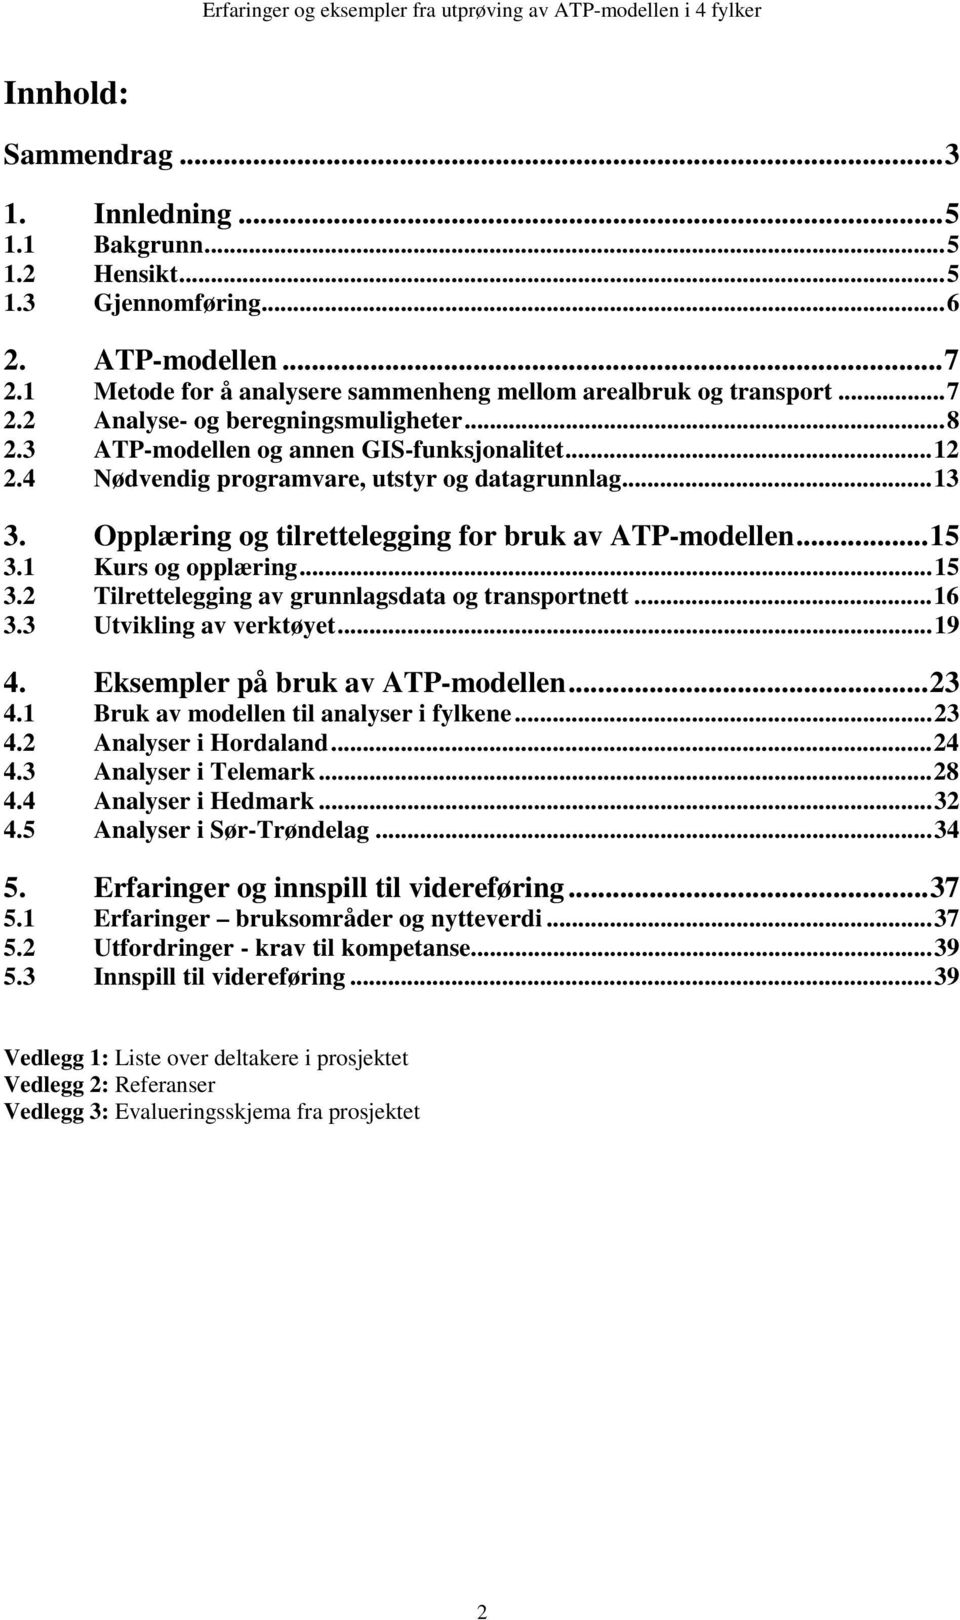 1 Kurs og opplæring...15 3.2 Tilrettelegging av grunnlagsdata og transportnett...16 3.3 Utvikling av verktøyet...19 4. Eksempler på bruk av ATP-modellen...23 4.